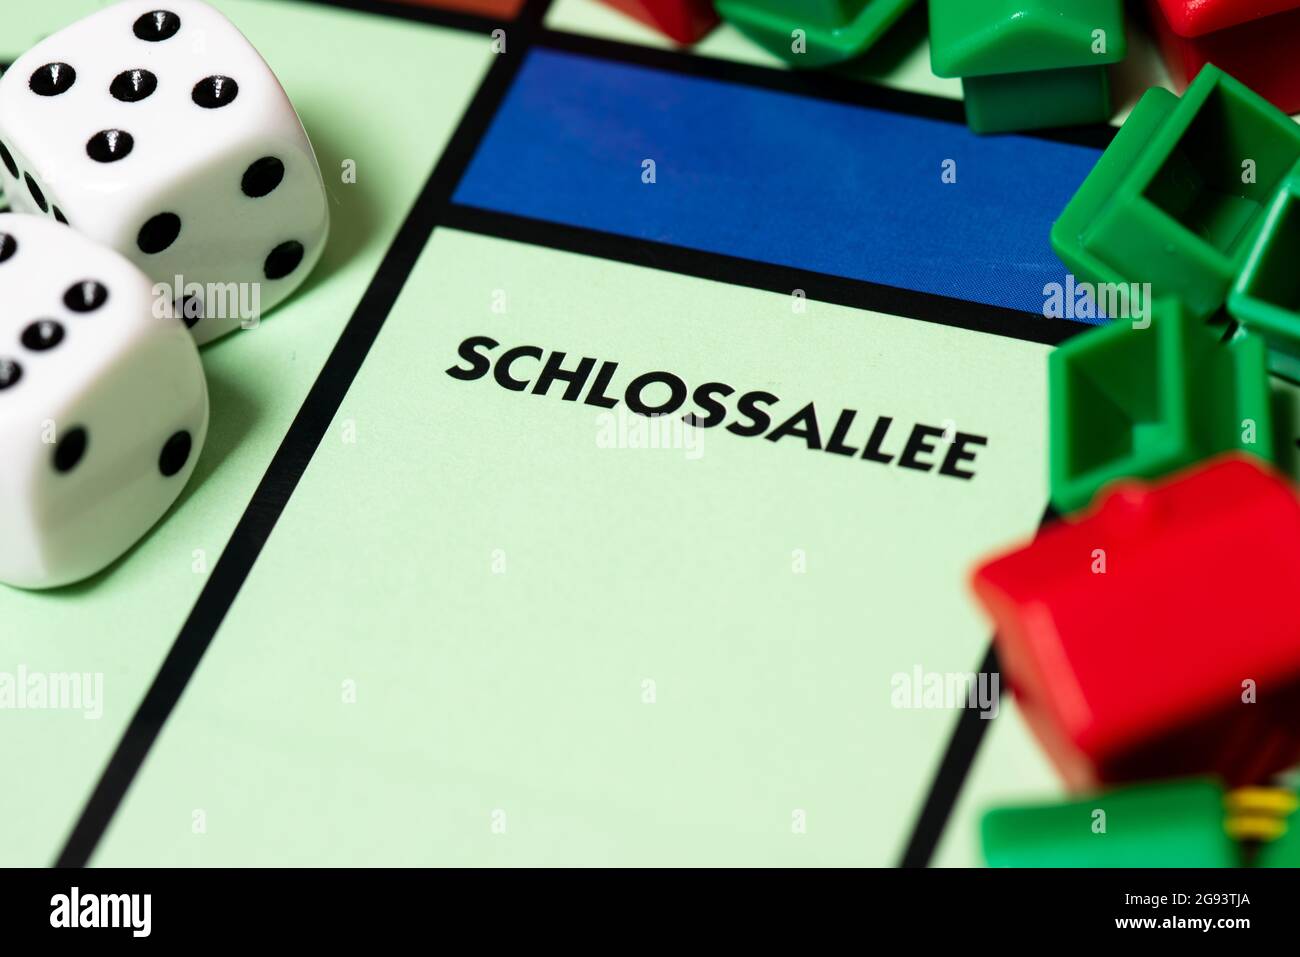 Gros plan de Scholssallee sur le Conseil allemand de monopole. Banque D'Images